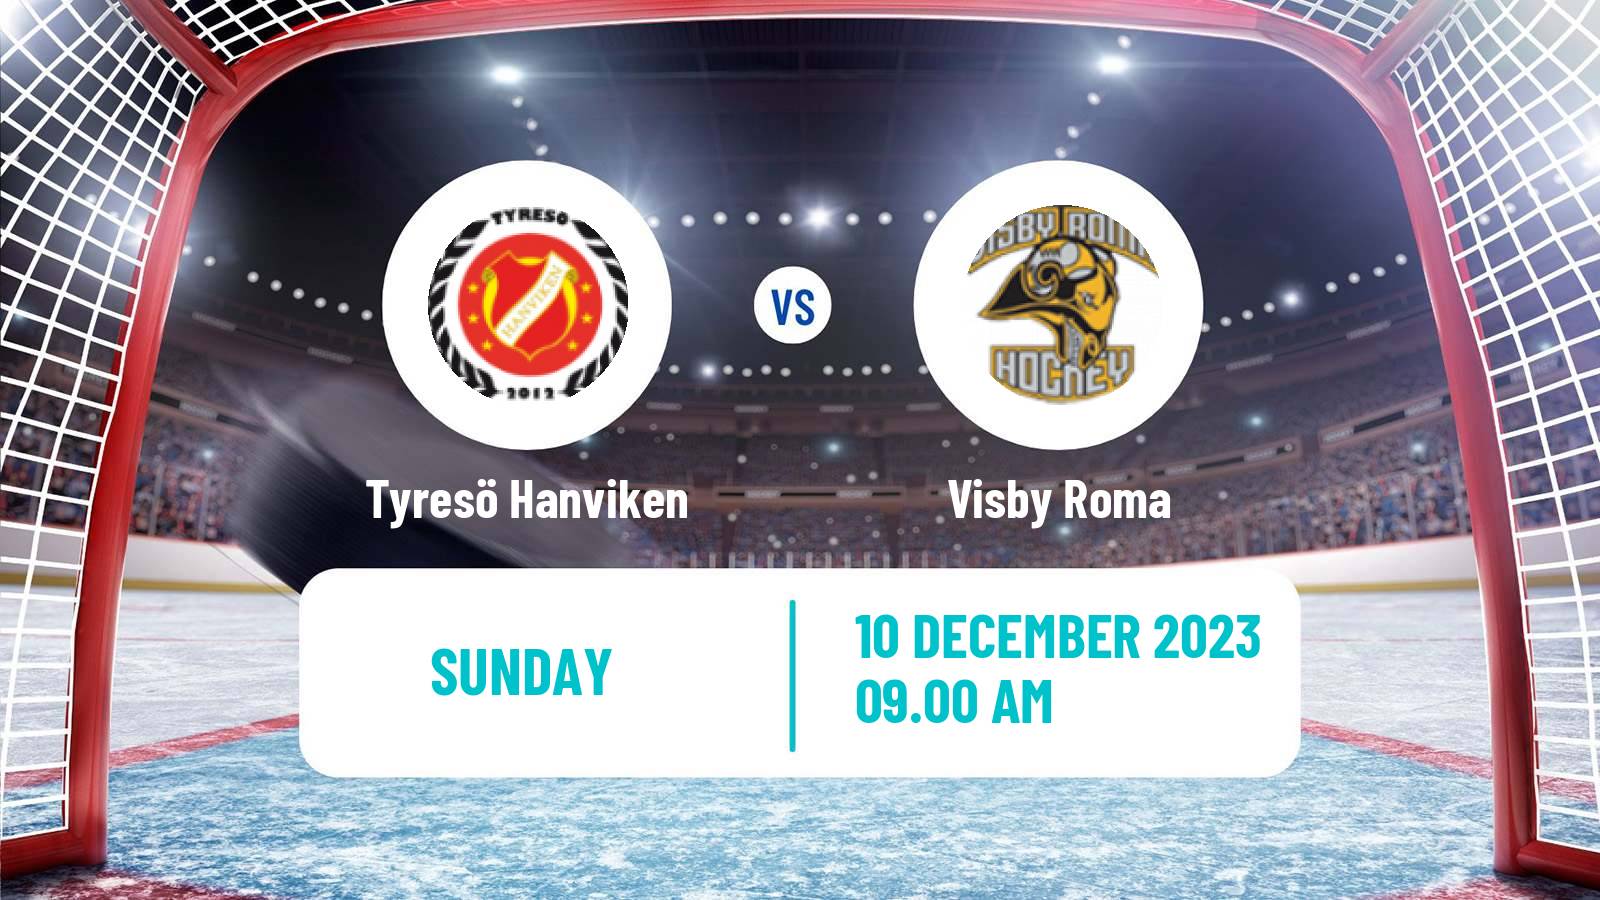 Hockey Swedish HockeyEttan Ostra Tyresö Hanviken - Visby Roma